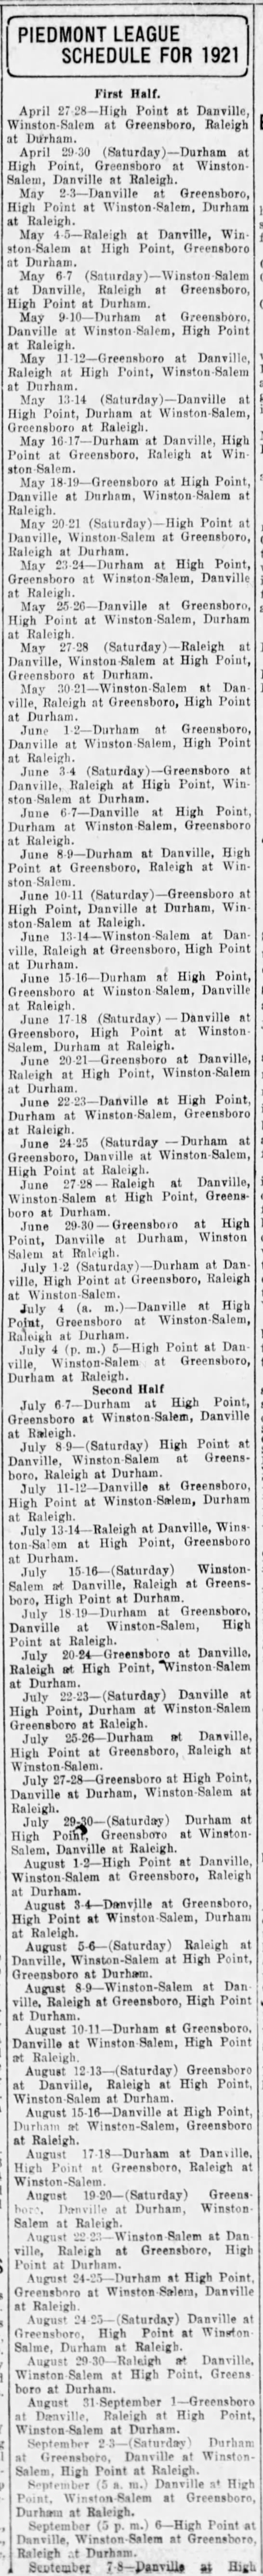 1921 Piedmont League schedule - 